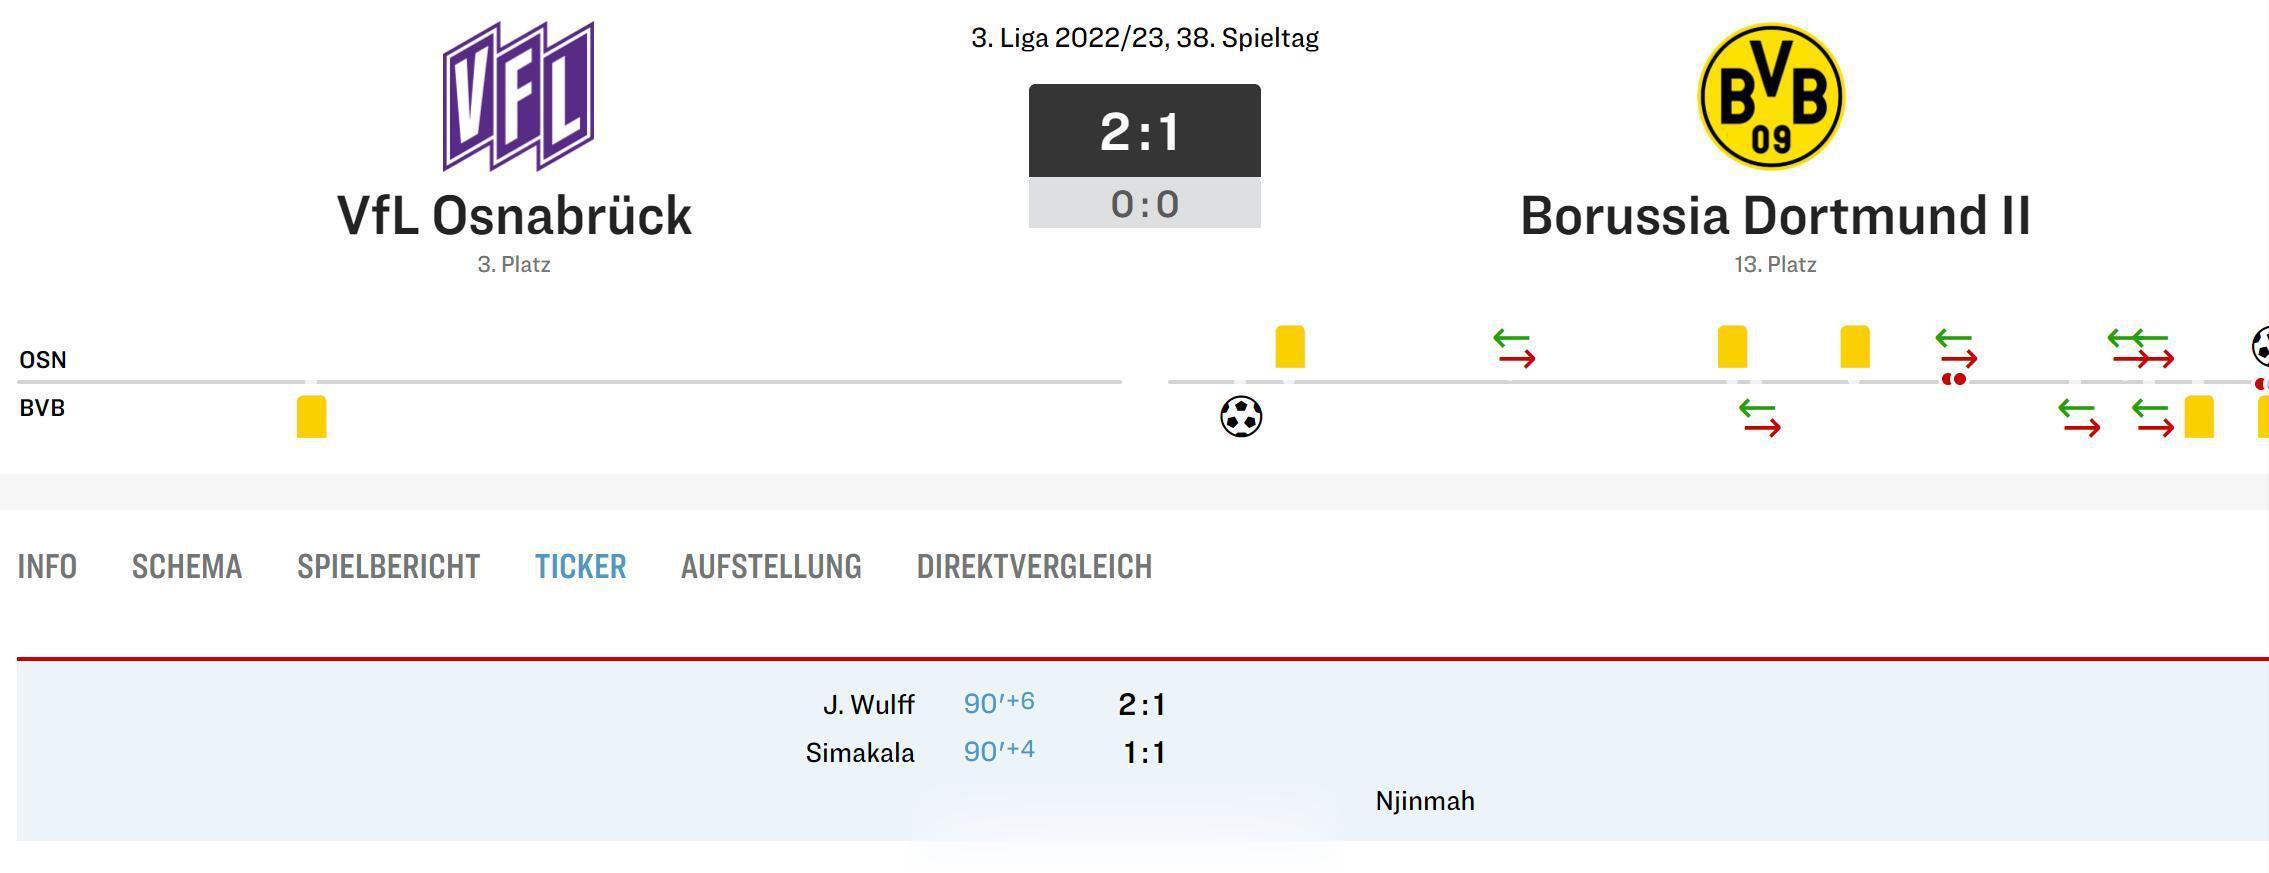 德丙最后一轮也出现了神剧情，奥斯纳布吕克在补时阶段连入2球，2比1逆转多特蒙德二